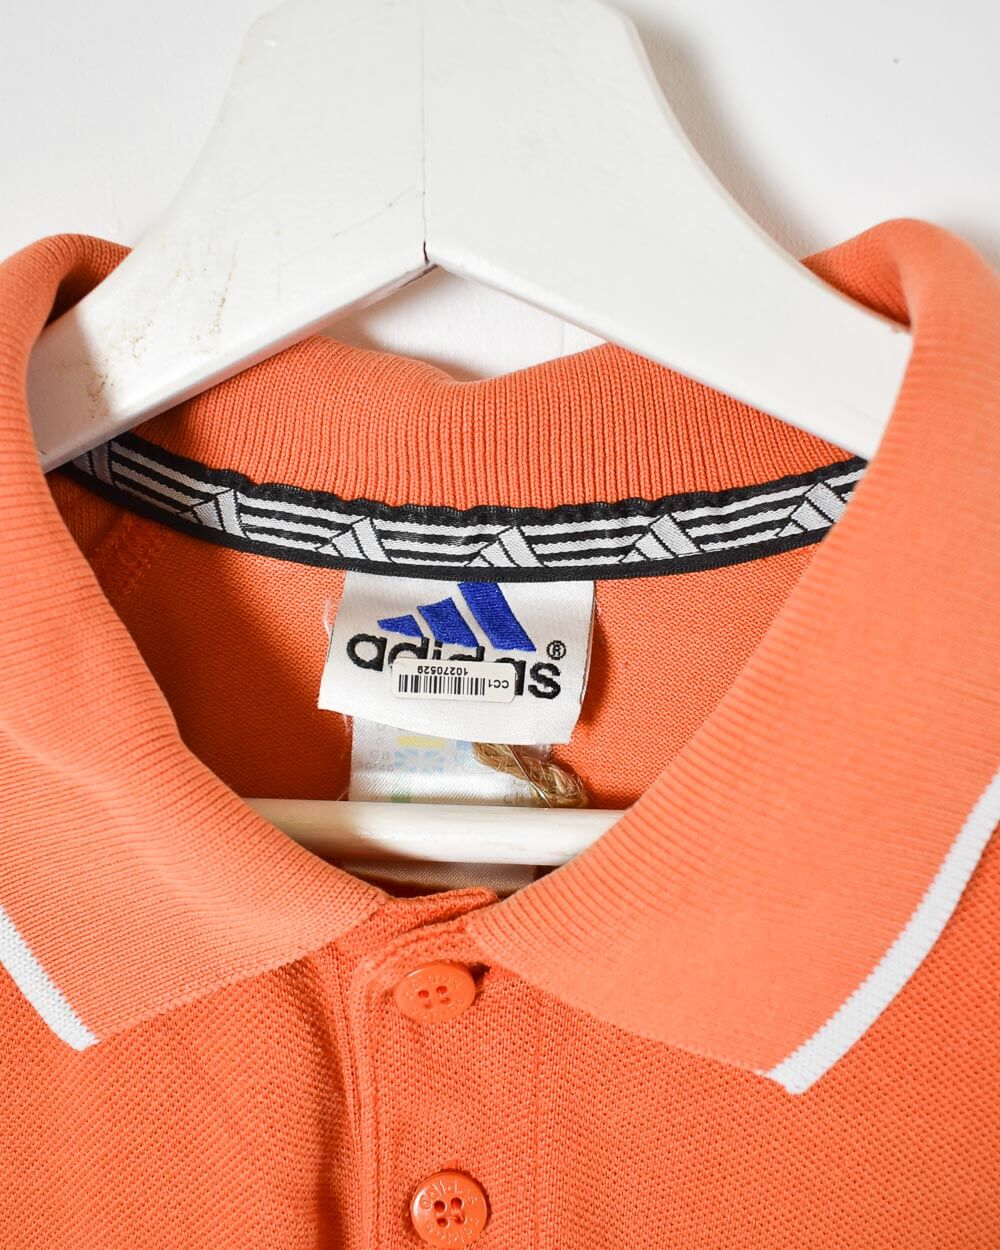 Orange Adidas Polo Shirt - Large